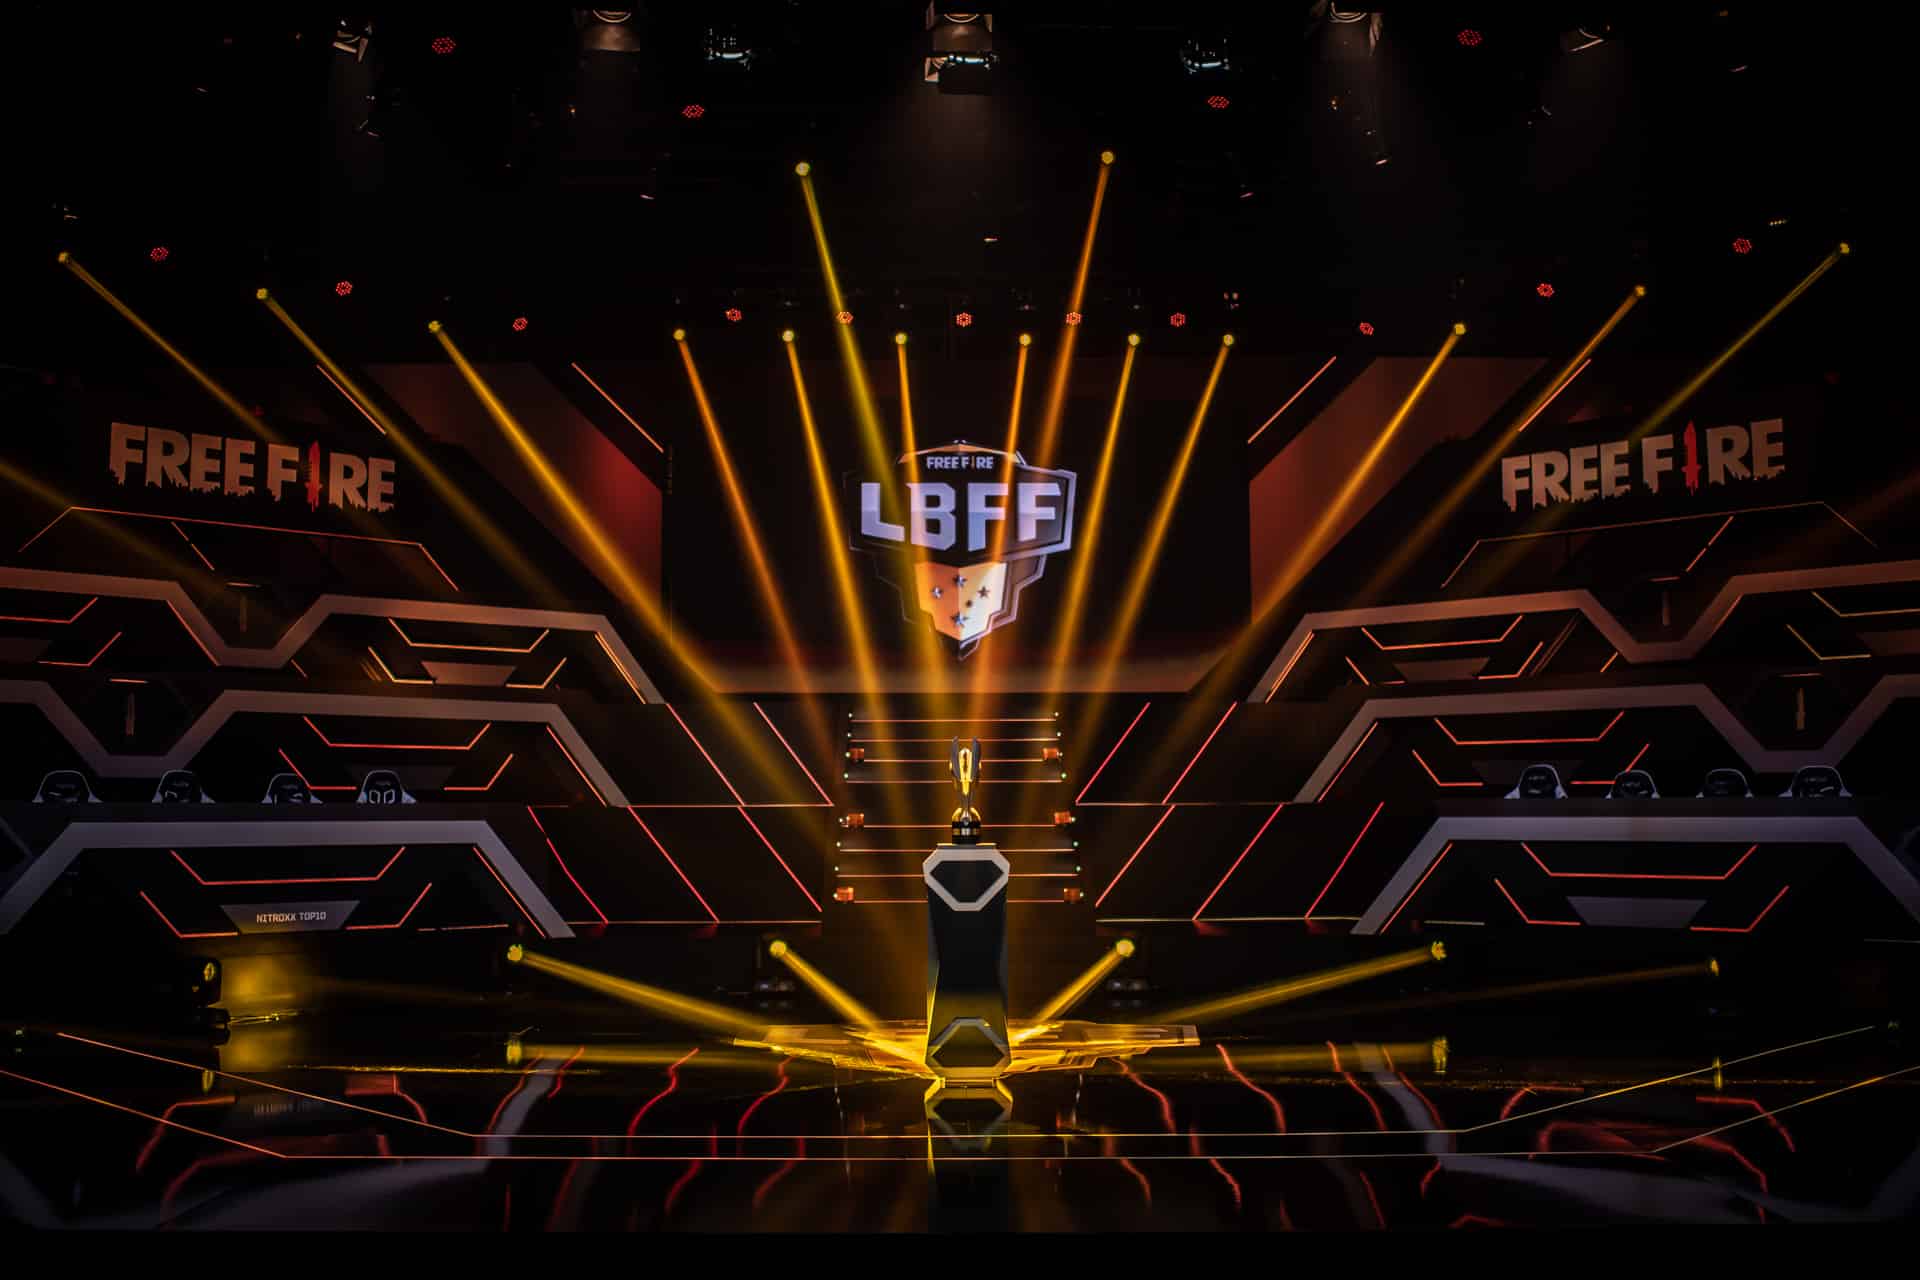 Boletim liga brasileira de free fire 7 - semana 1 | a0bfb8e0 ff71 | free fire | space exibirá lbff 8 free fire